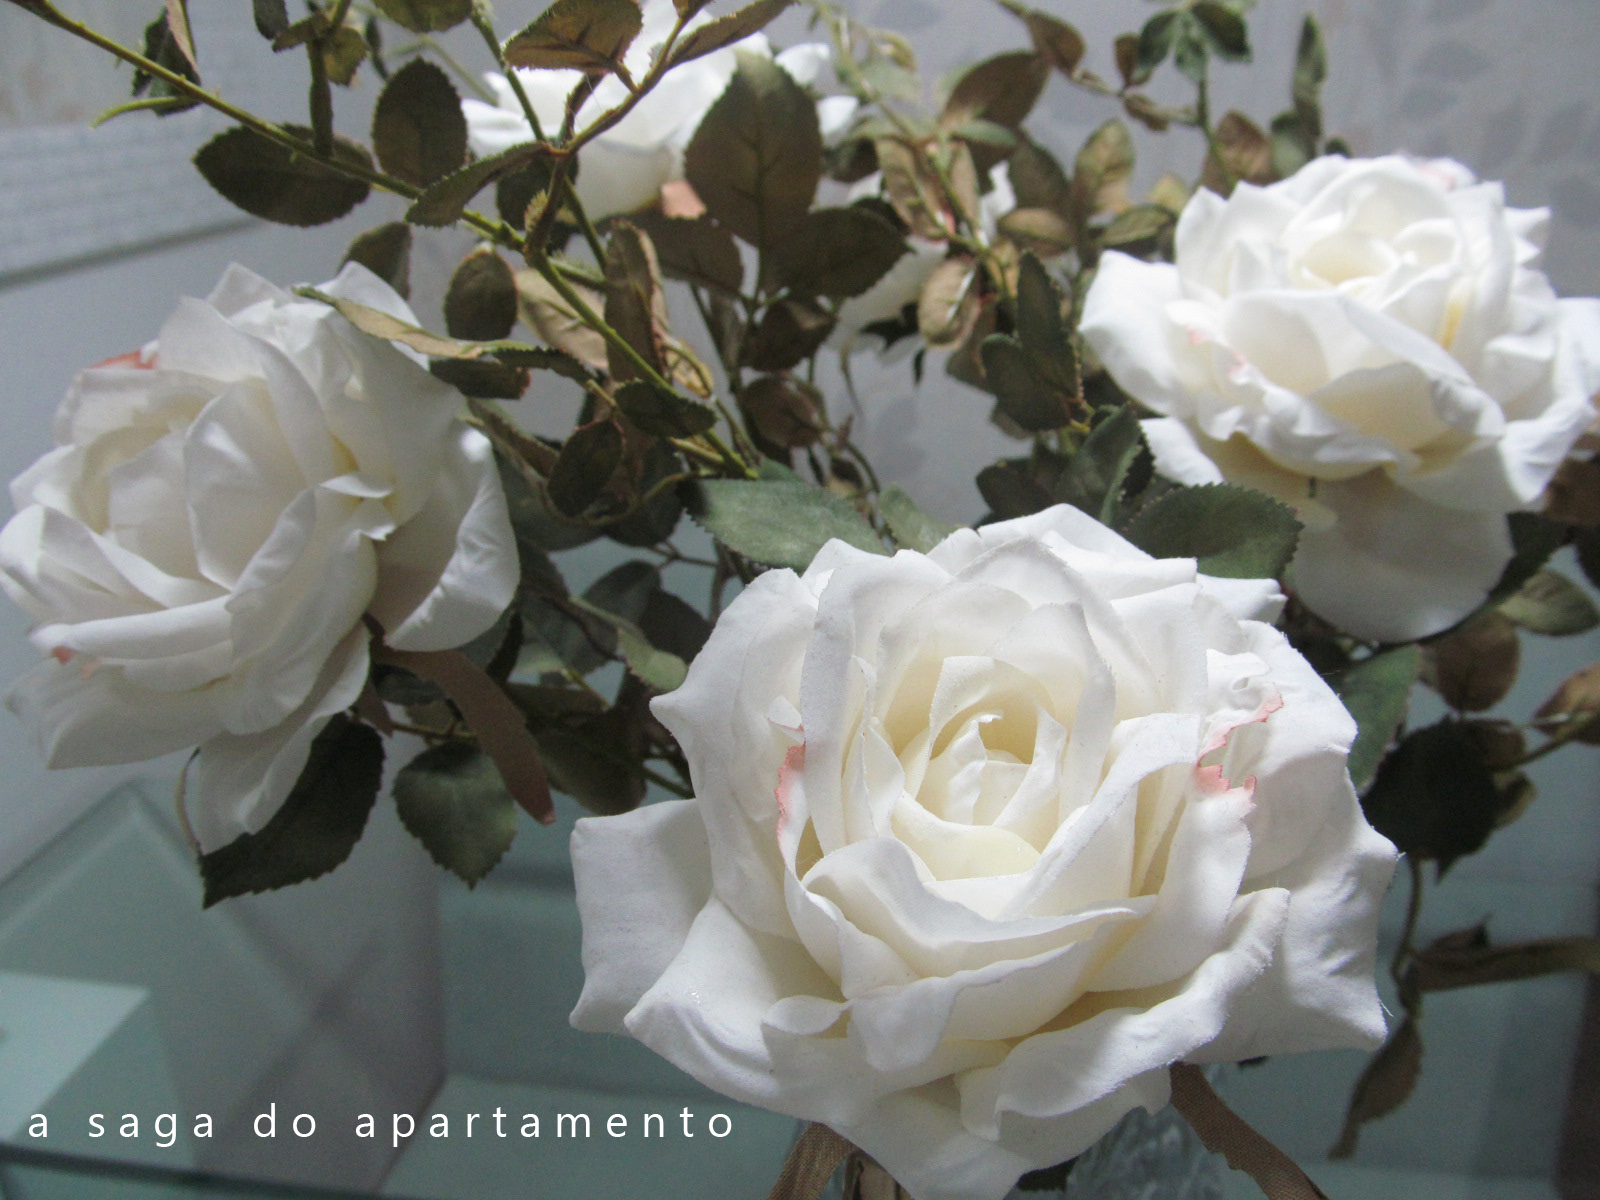 rosas brancas artificiais | a saga do apartamento